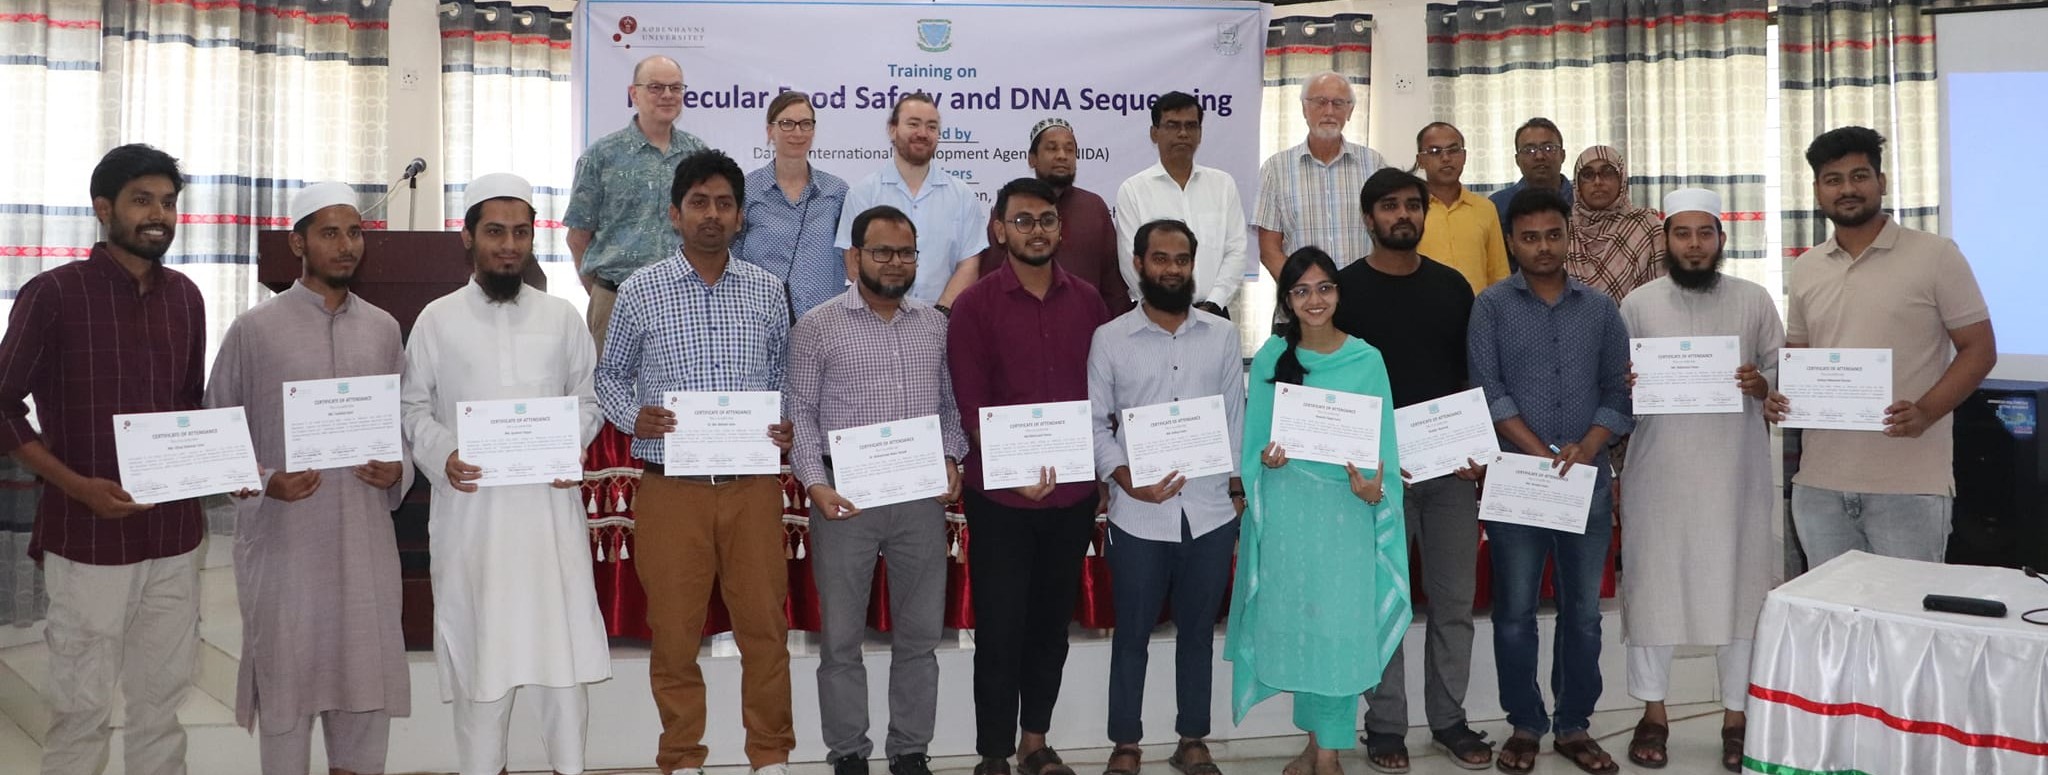 চিংড়ি গবেষণা কেন্দ্র, বাগেরহাটে Molecular Food Safety and DNA Sequencing শীর্ষক  ৬ দিন ব্যাপি প্রশিক্ষণ